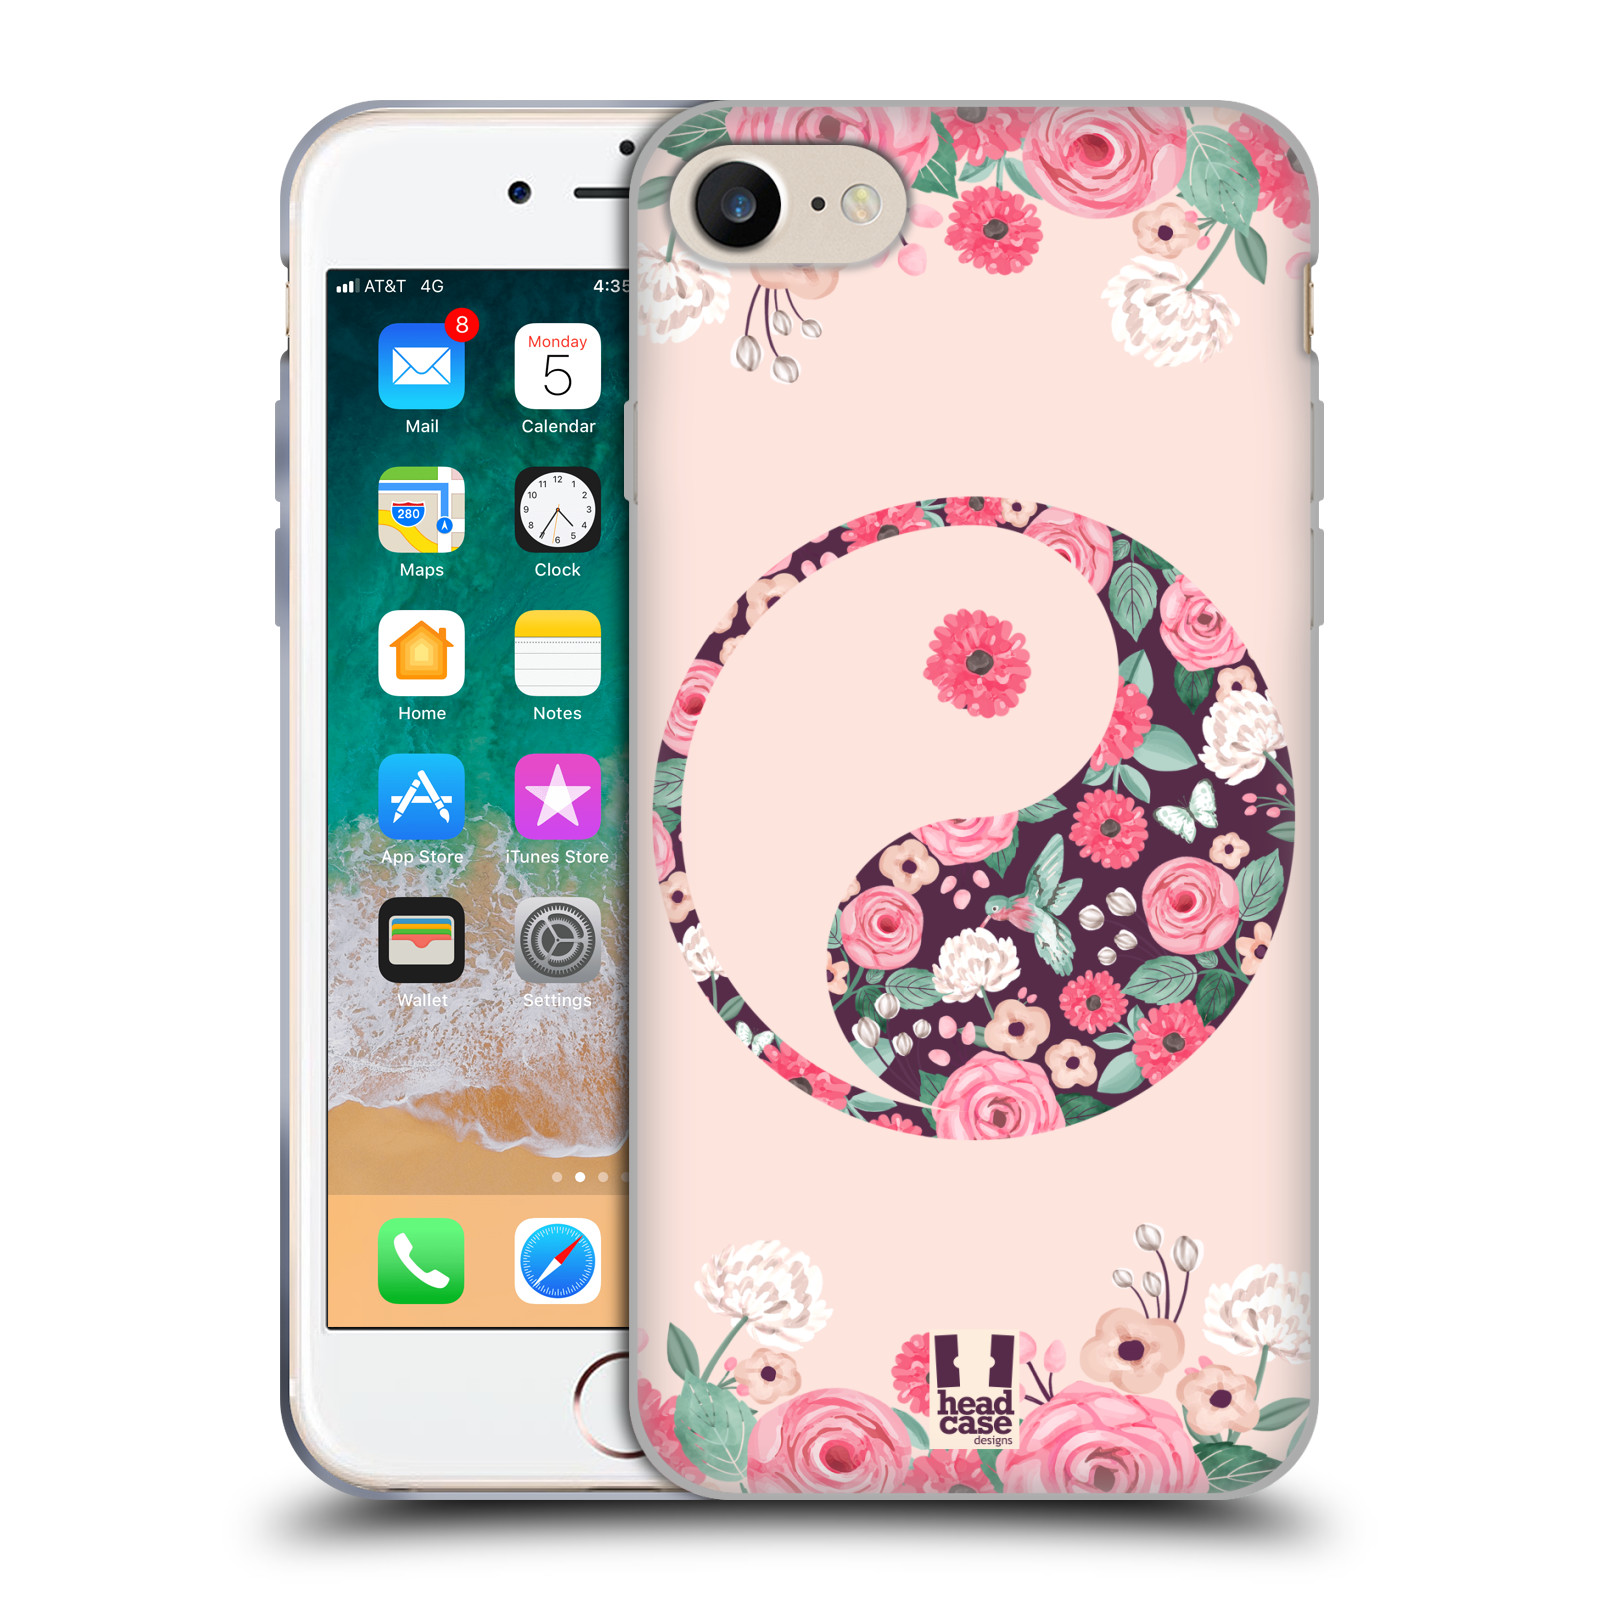 Silikonové pouzdro na mobil Apple iPhone SE 2022 / SE 2020 - Head Case - Yin a Yang Floral (Silikonový kryt, obal, pouzdro na mobilní telefon Apple iPhone SE 2020 / Apple iPhone SE 2022 s motivem Yin a Yang Floral)